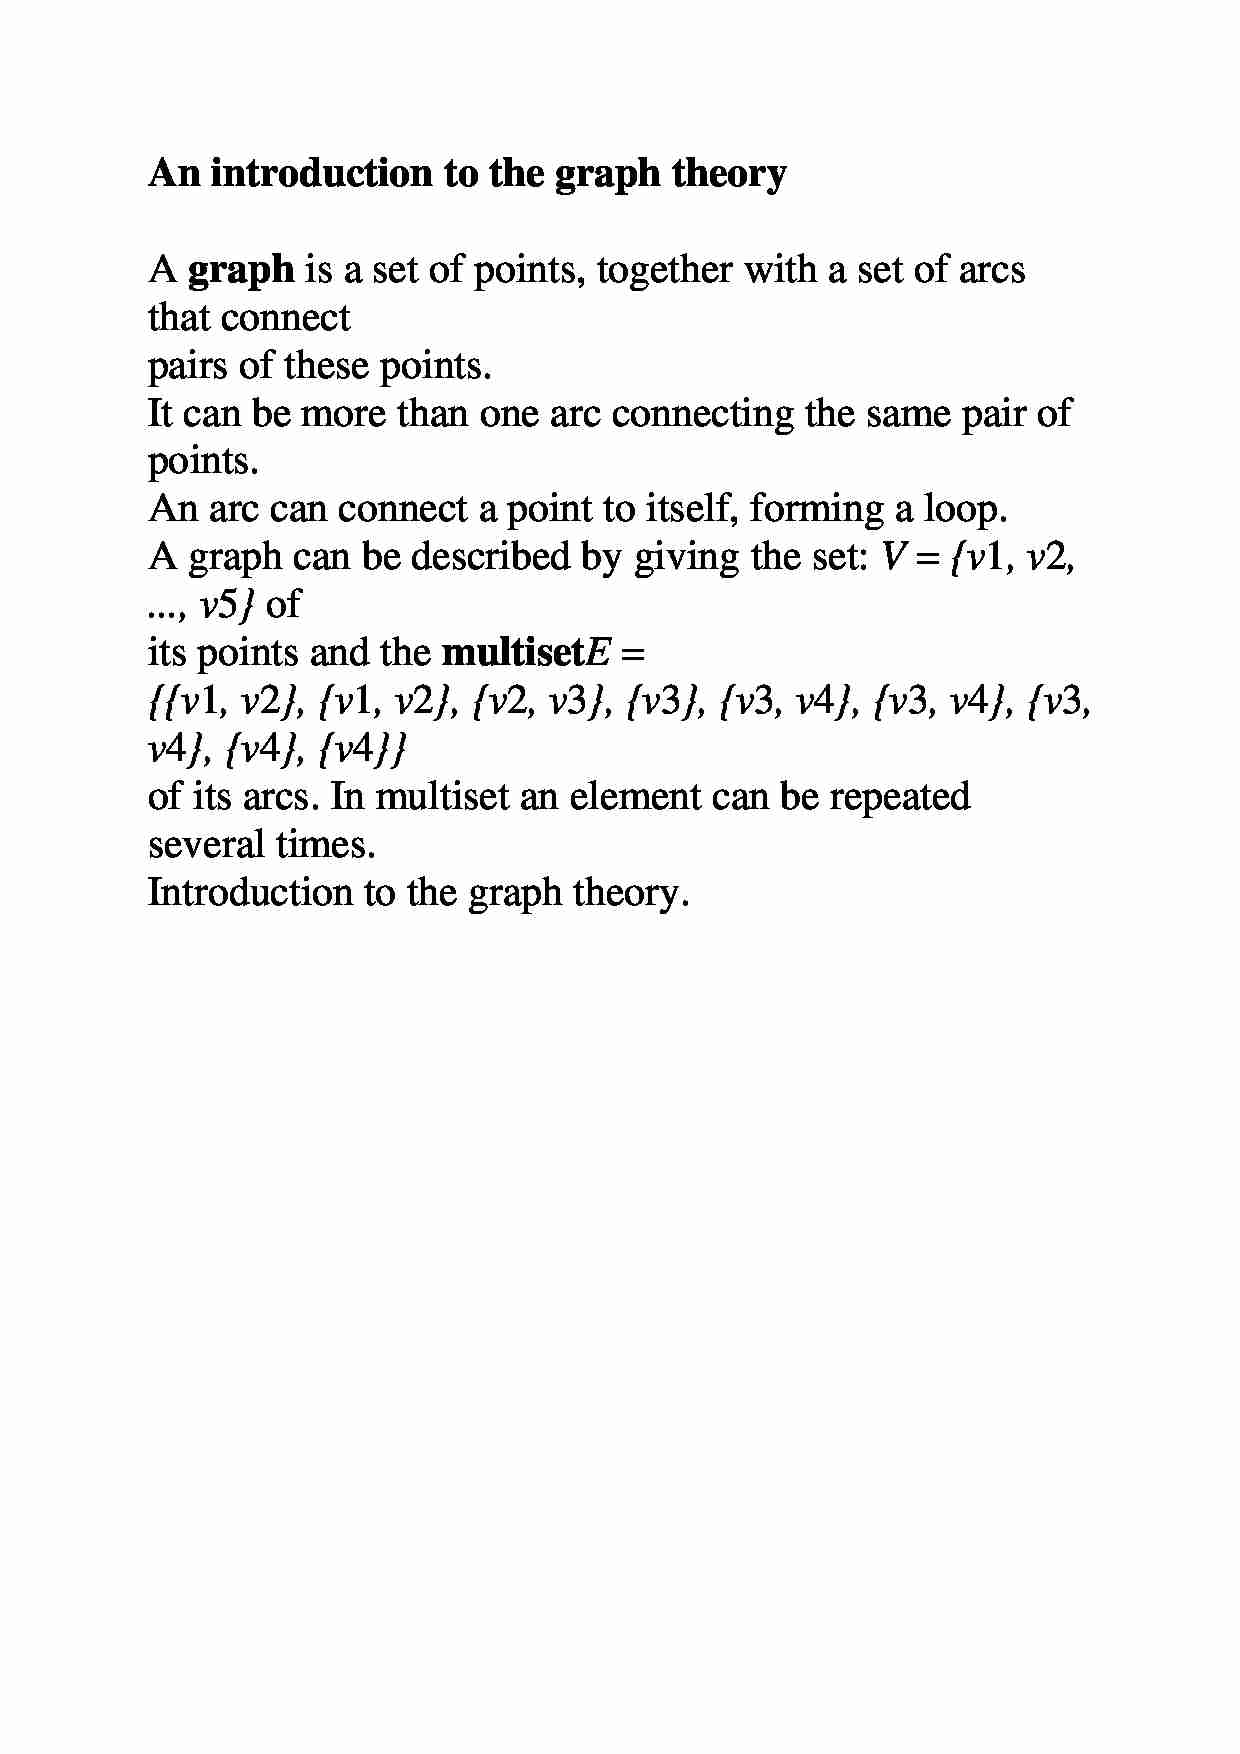 Wprowadzenie do teorii grafów - strona 1